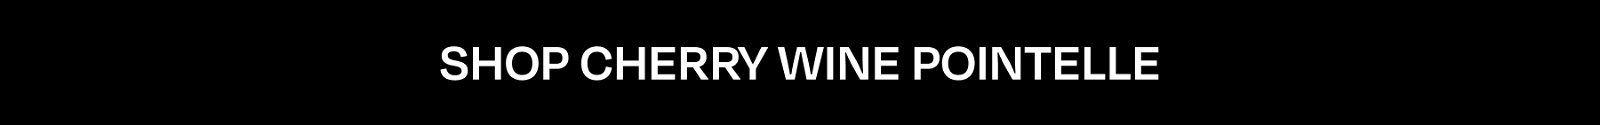 SHOP CHERRY WINE POINTELLE